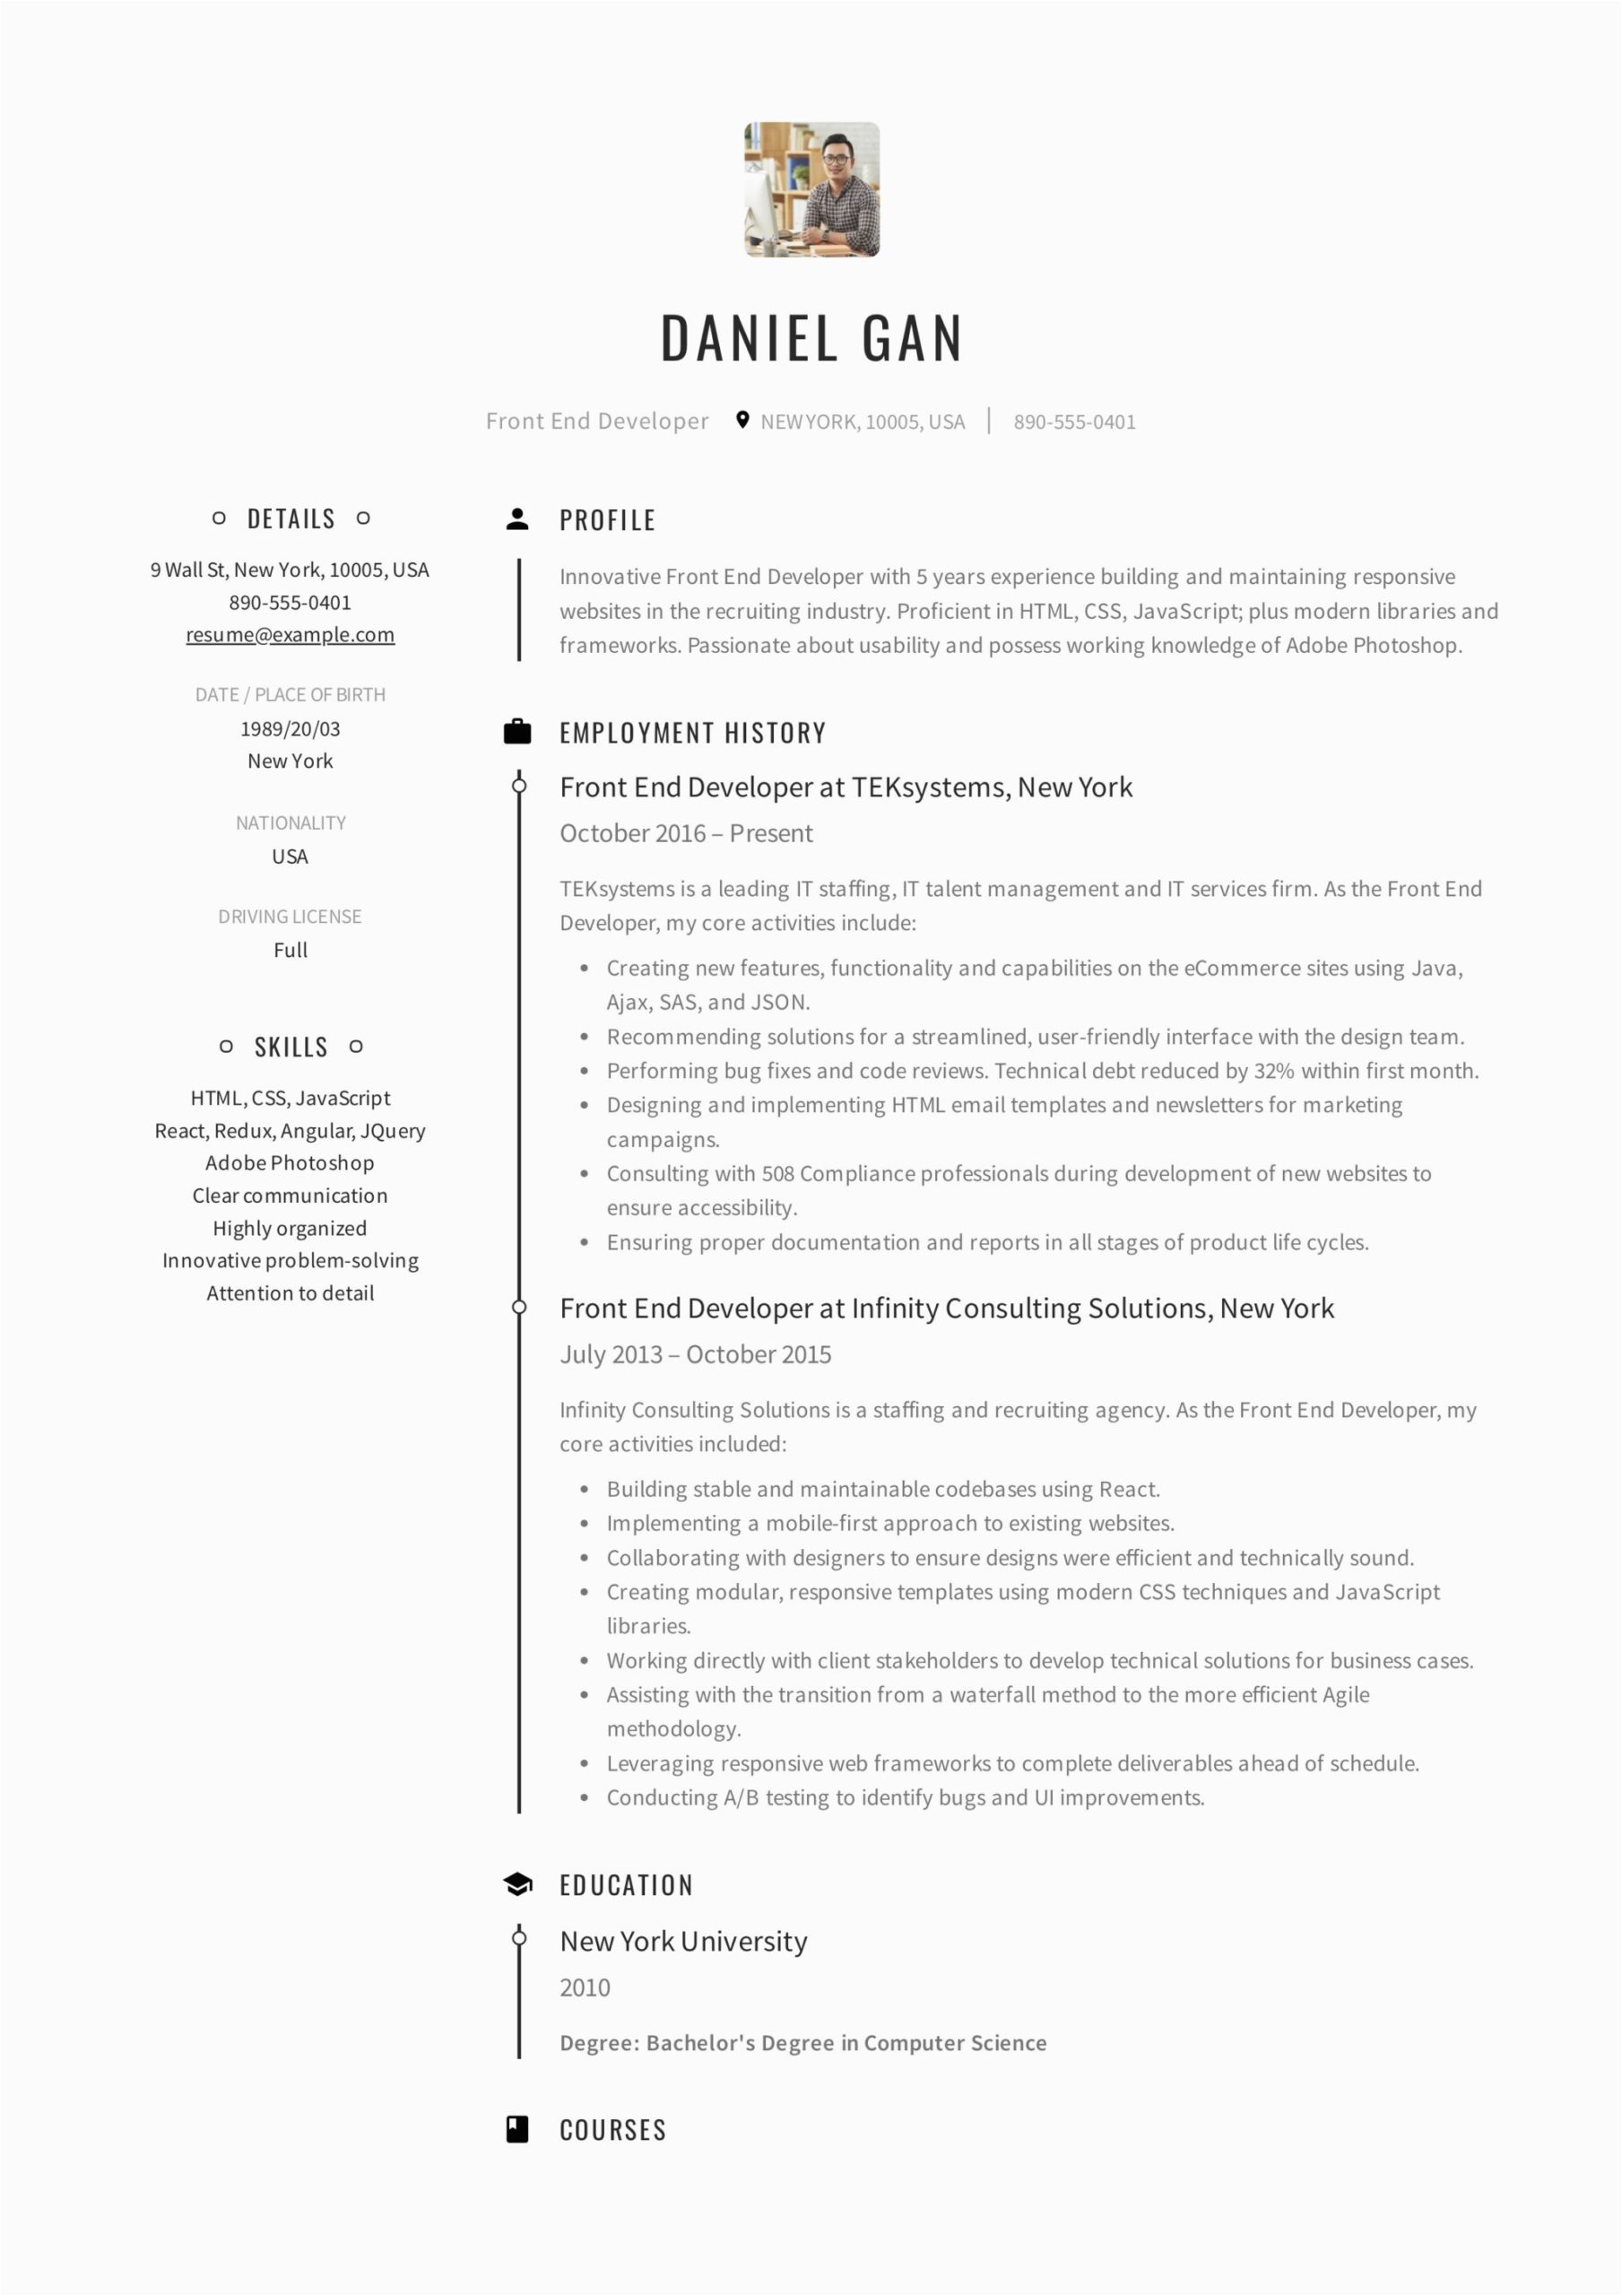 Front End Developer Job Resume Samples Guide Front End Developer Resume [ 12 Samples ] Pdf